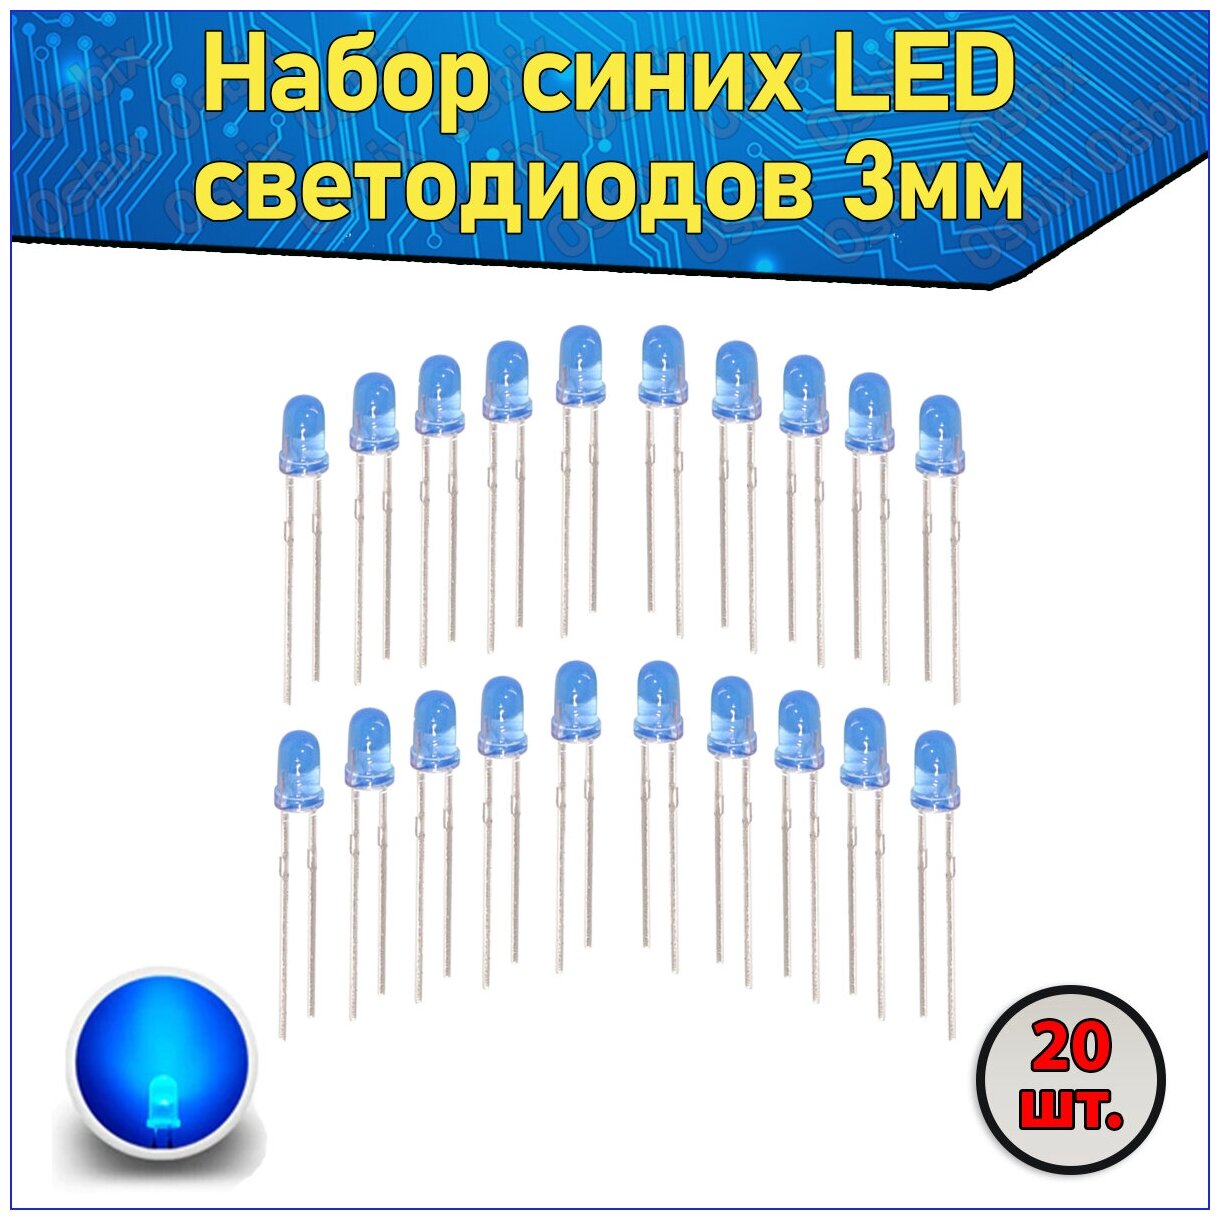 Набор синих LED светодиодов 3мм